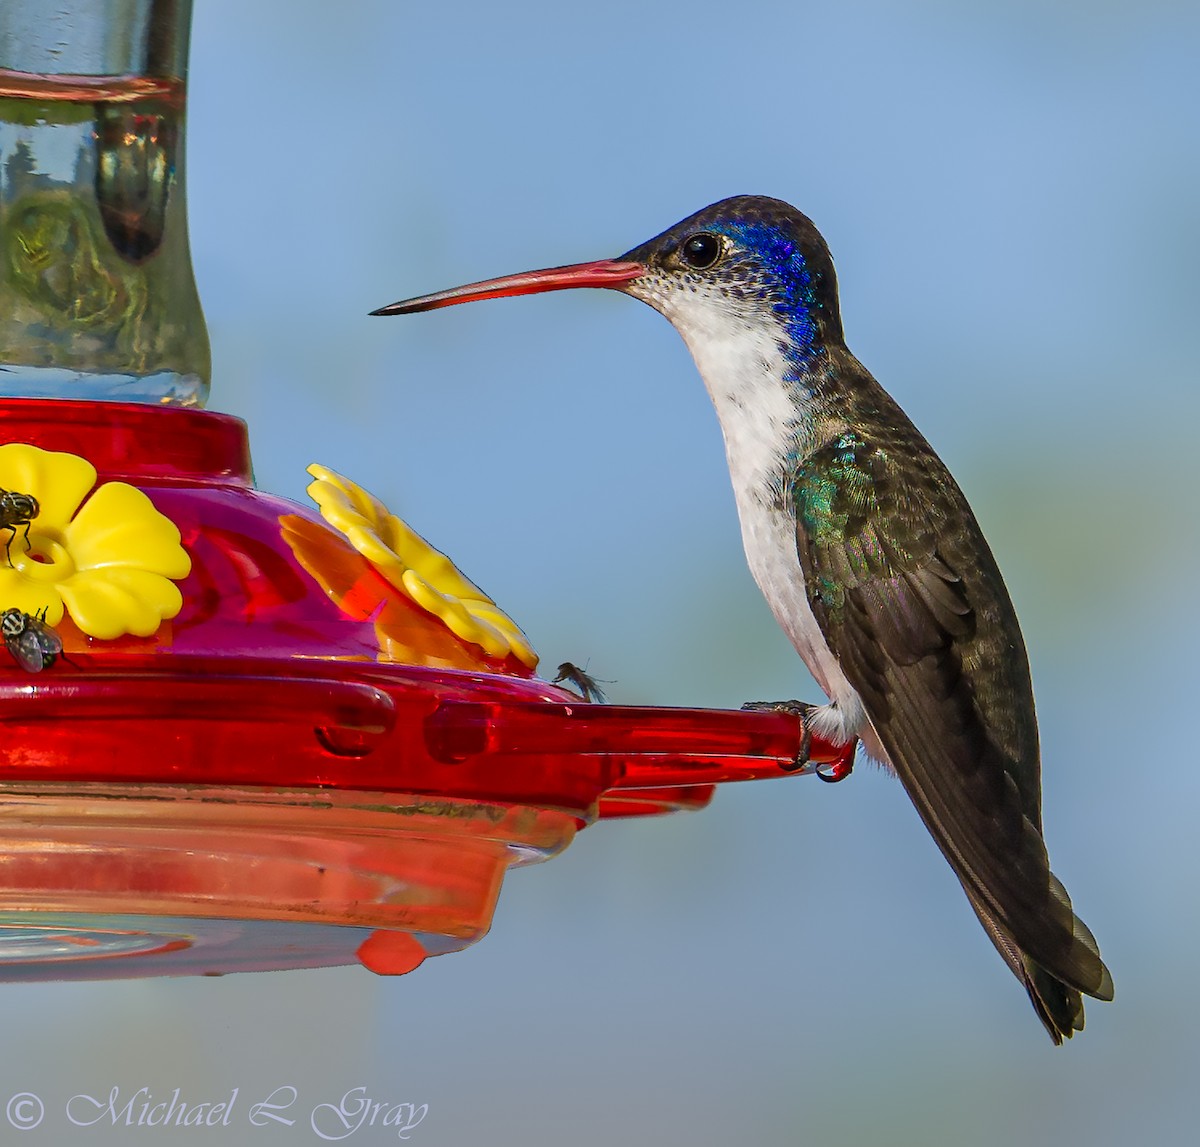 Violet-crowned Hummingbird - Cecilia Riley